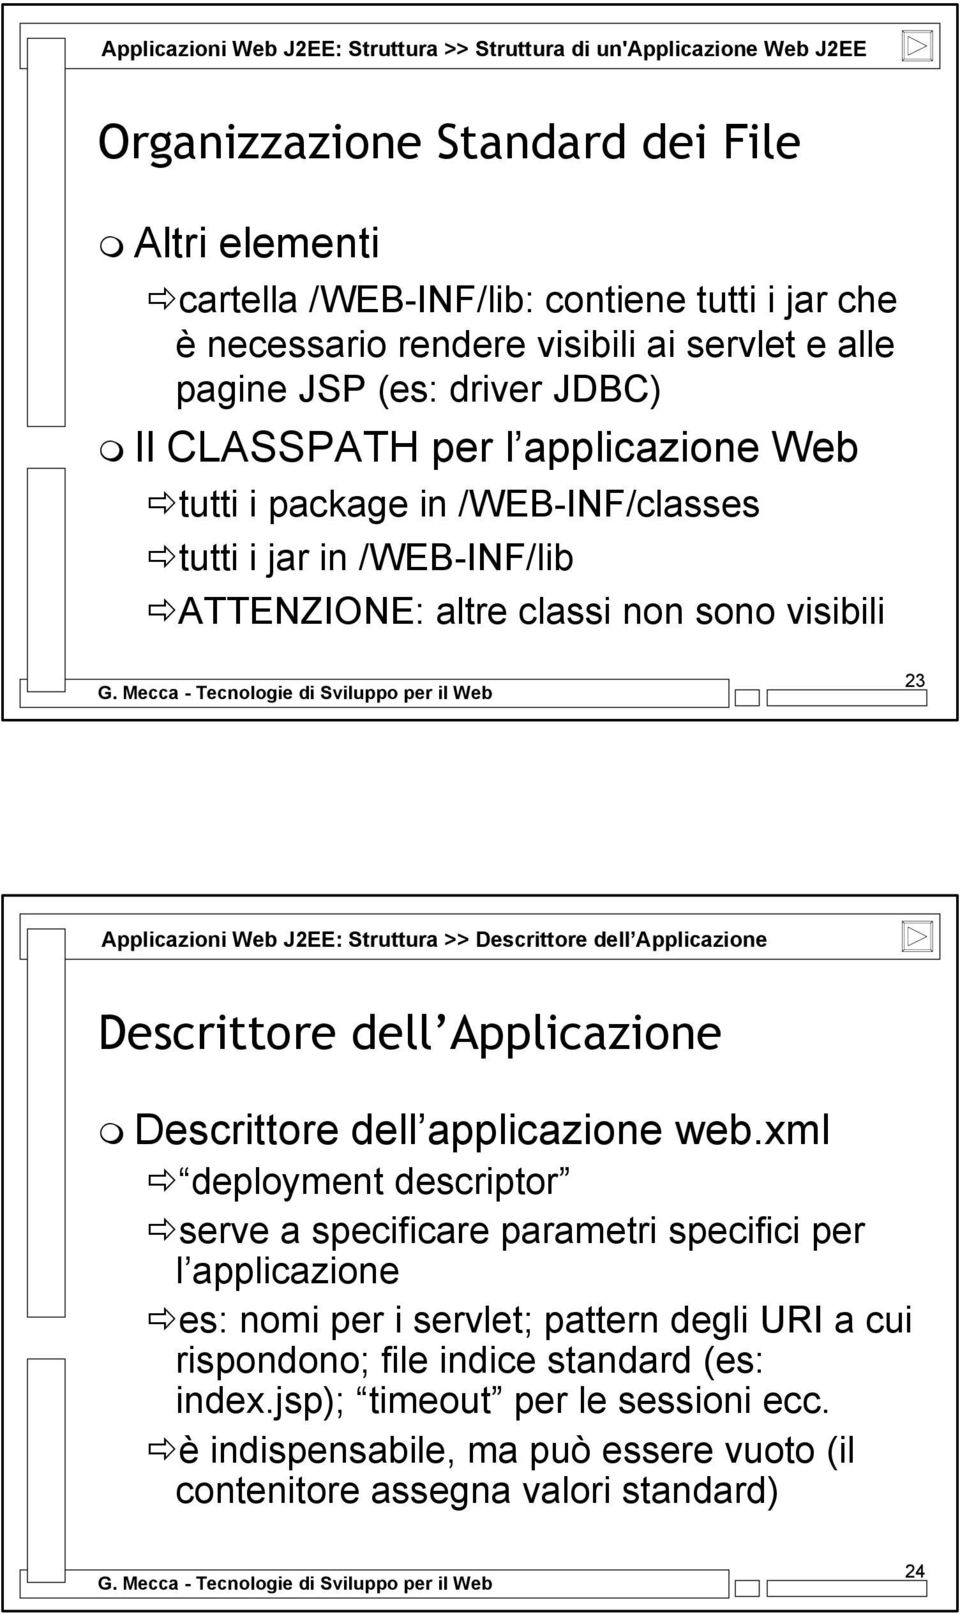 Applicazioni Web J2EE: Struttura >> Descrittore dell Applicazione Descrittore dell Applicazione Descrittore dell applicazione web.